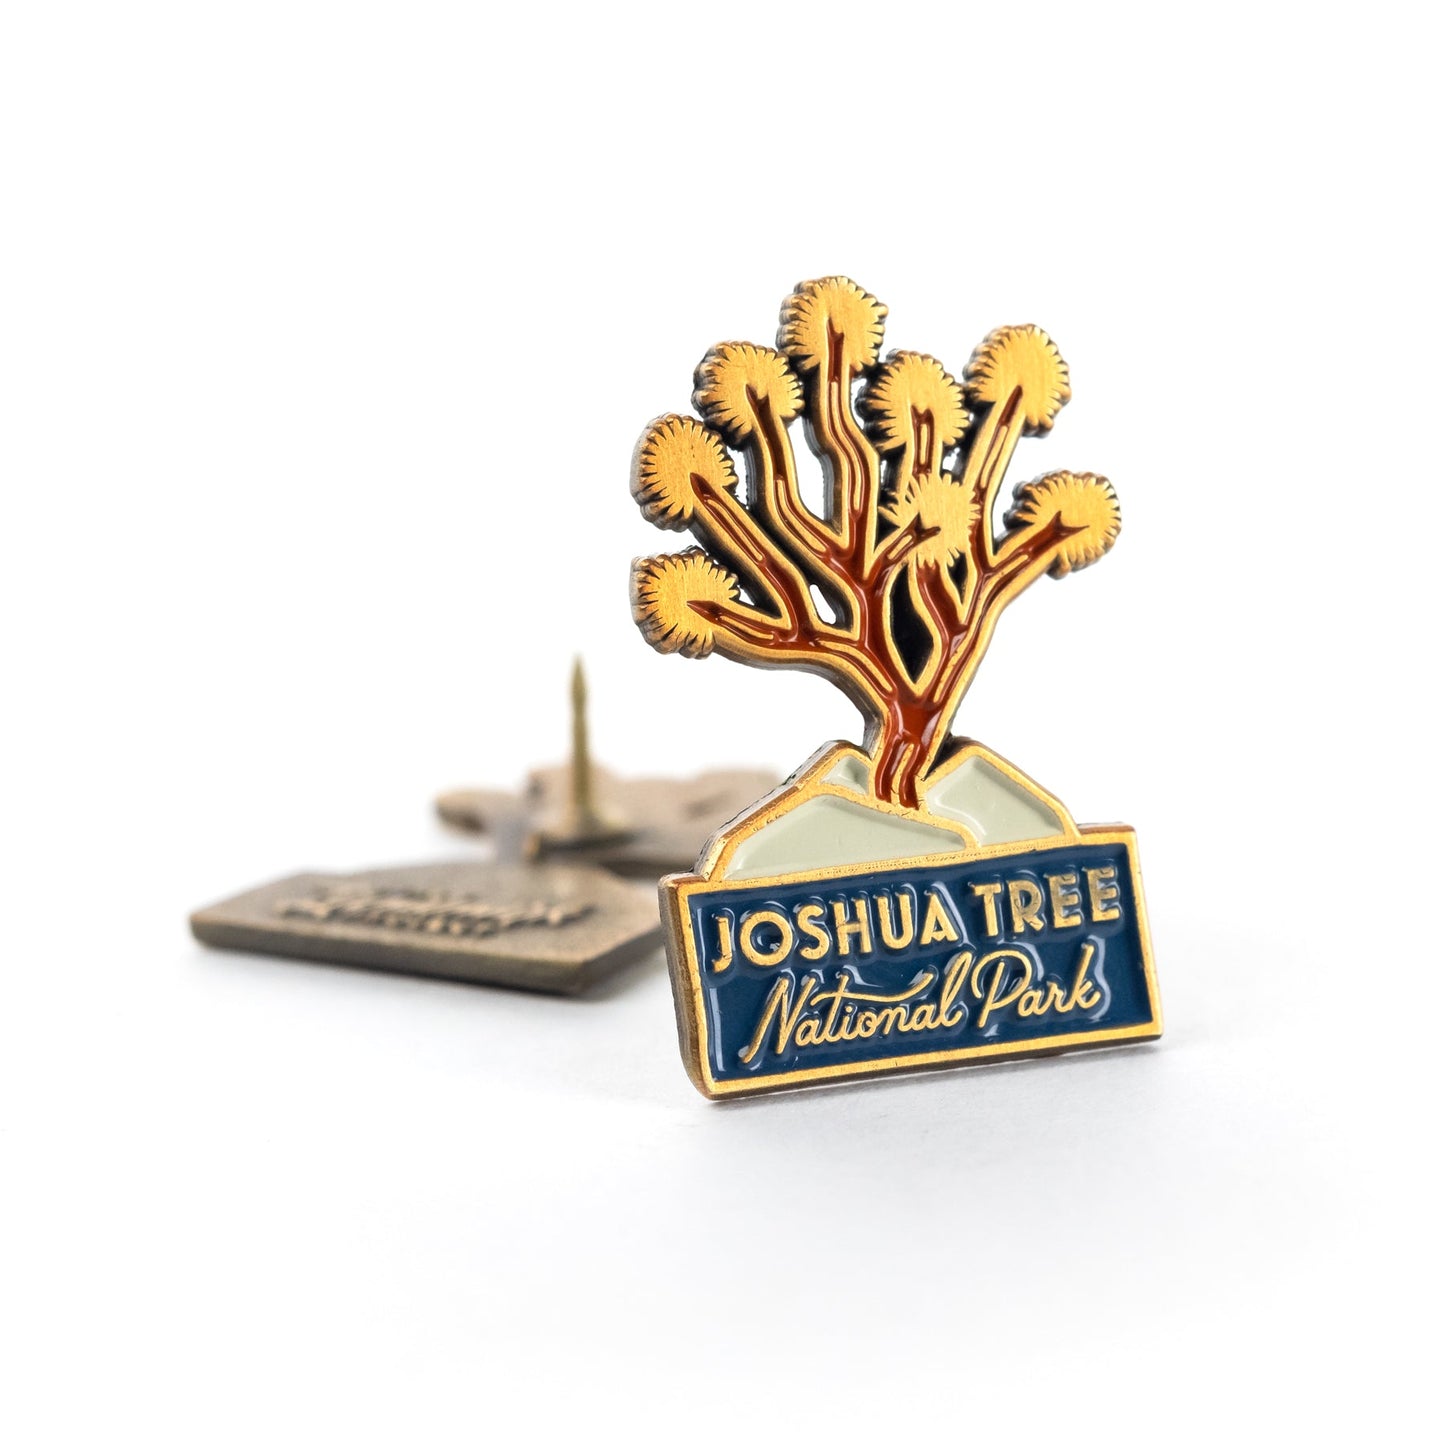 Joshua Tree enamel pin